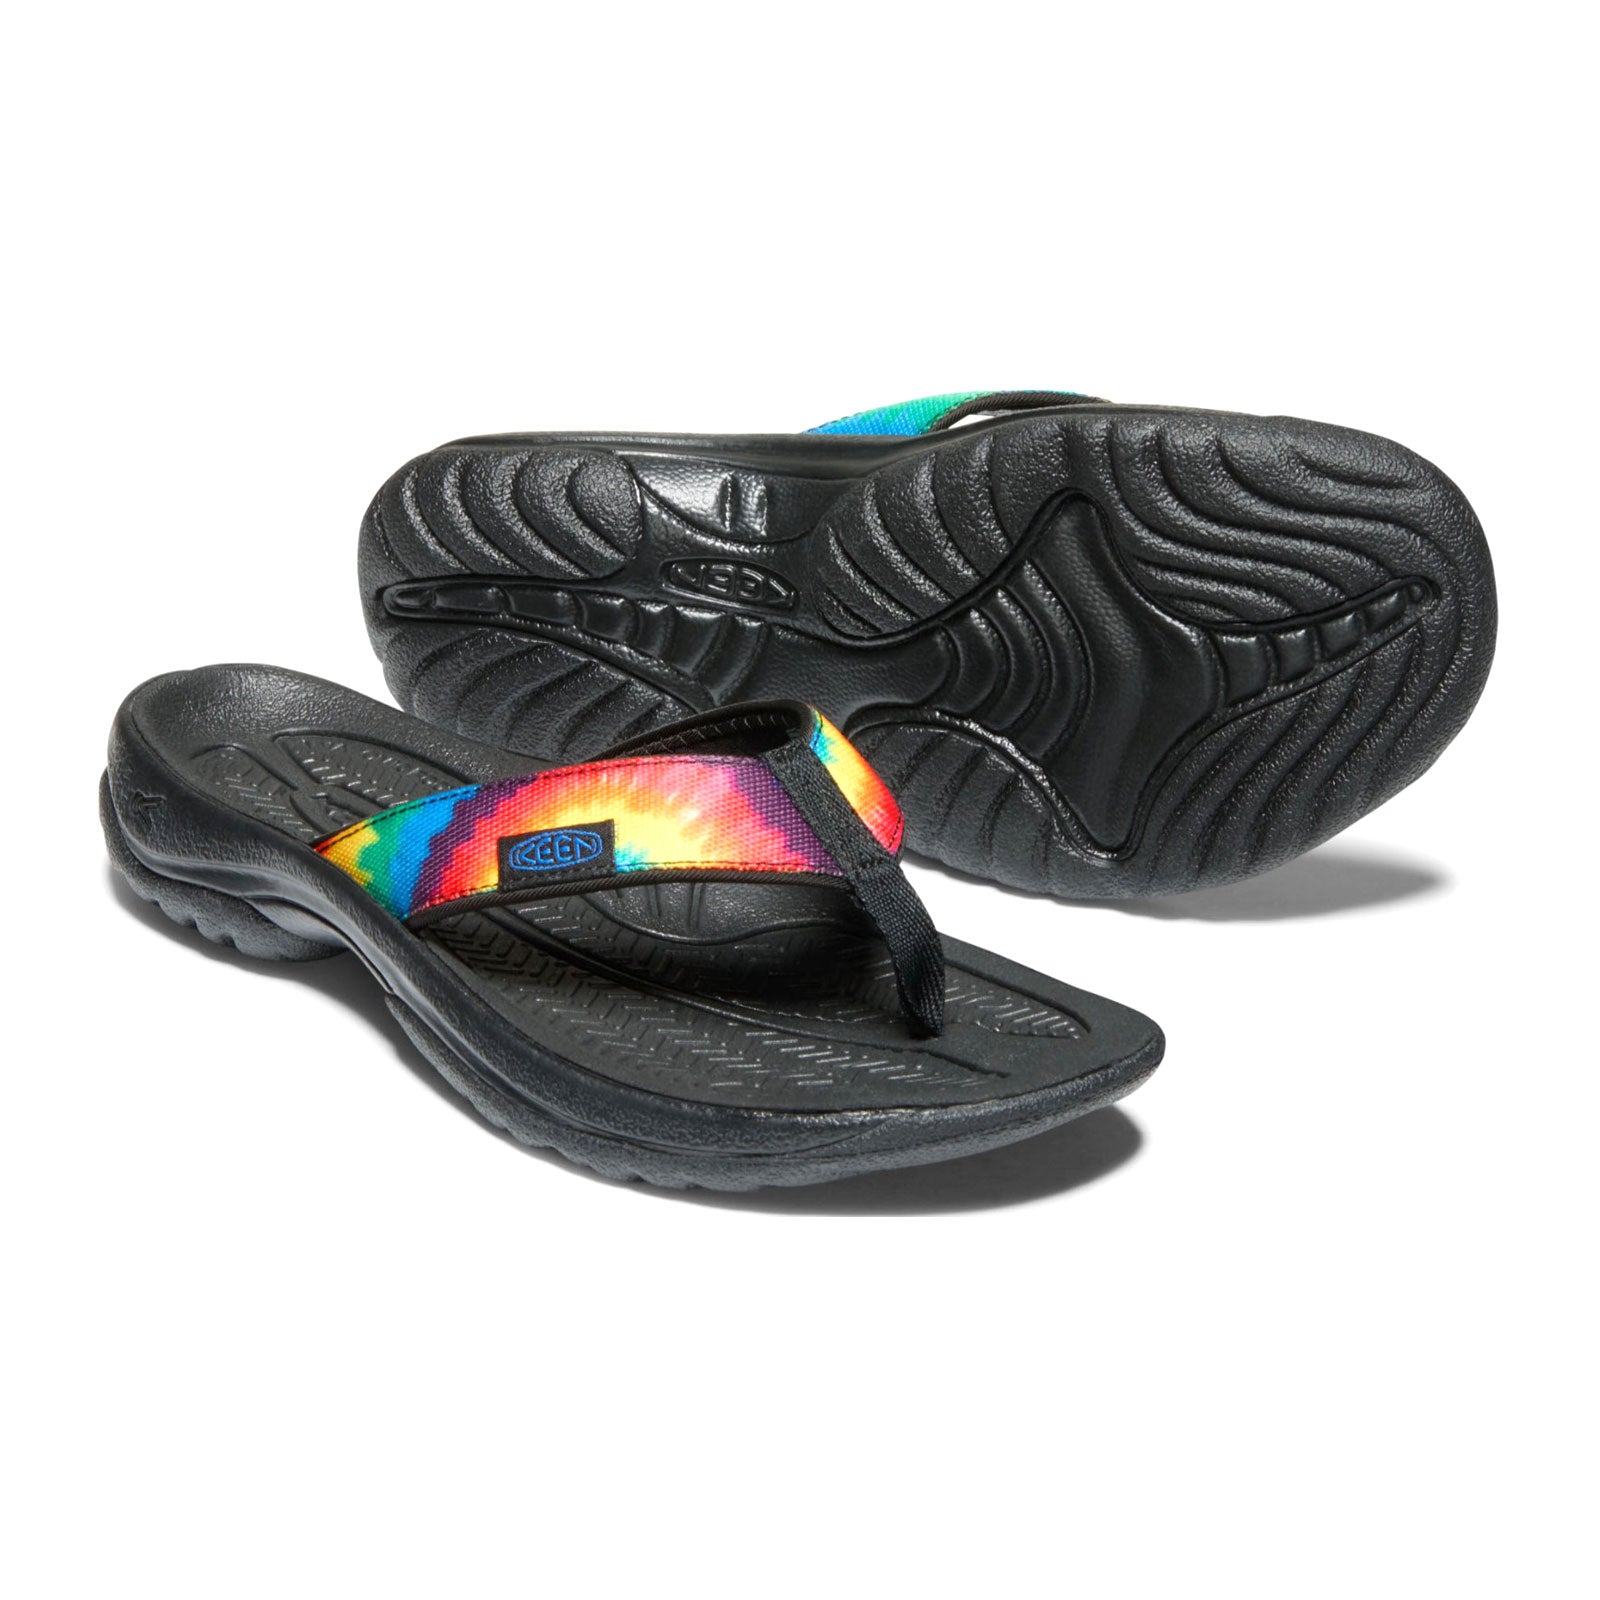 Keen Kona Flip II Sandal (Men) - Original Tie Dye - The Heel Shoe Fitters